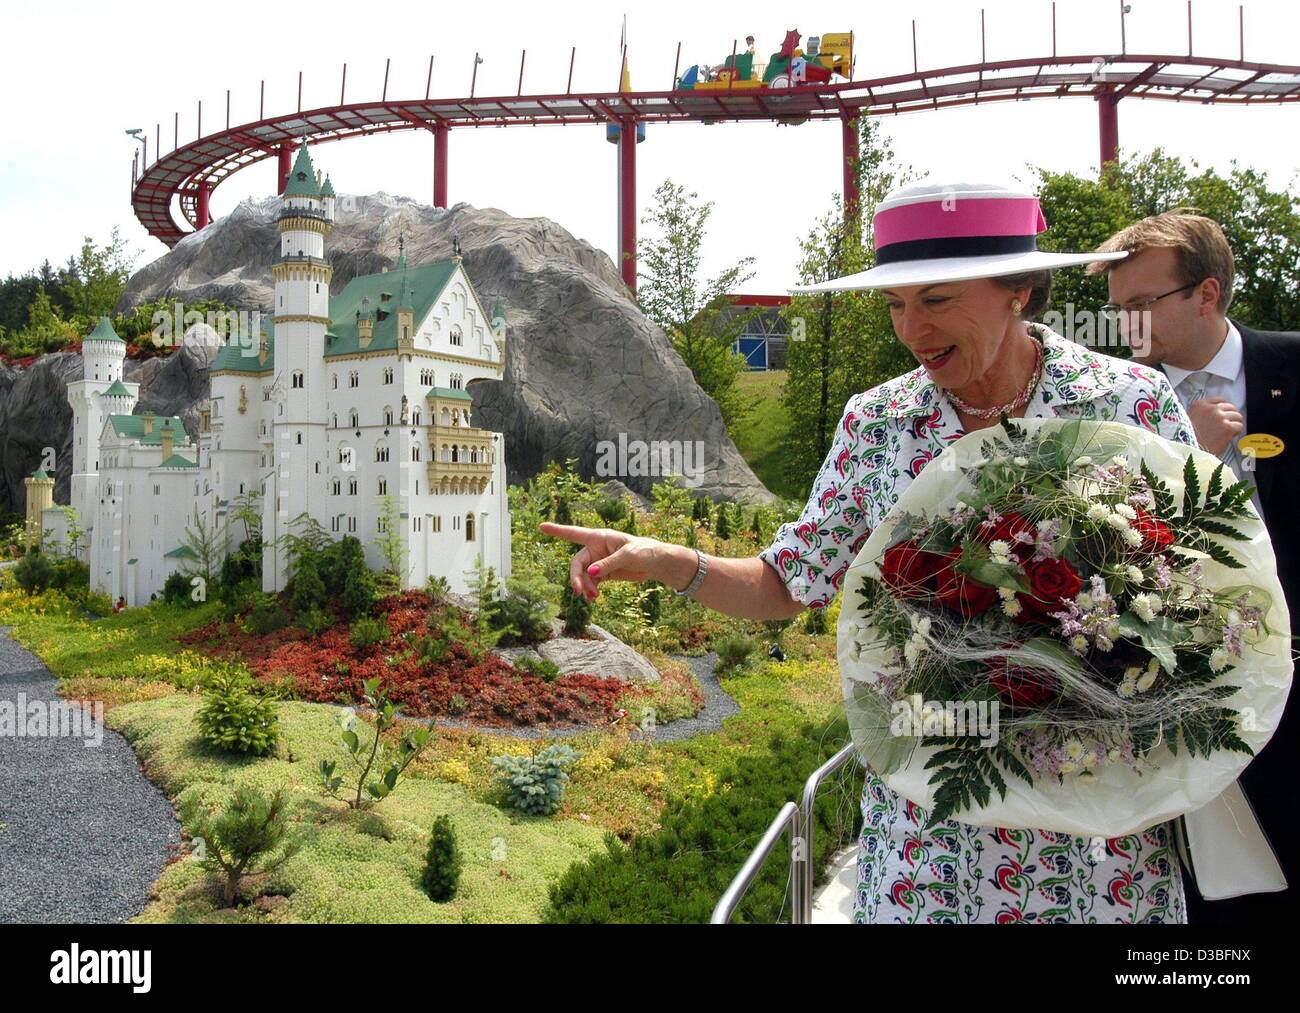 (Dpa) - Danish principessa Benedikte (anteriore, R) e il managing director business del parco Legoland, Stig Blicher (retro, R), passeggiate passato una versione in miniatura del castello "Neu Schwanstein' fatta da lego durante una visita al parco Legoland vicino Guenzenburg, Germania, 26 giugno 2003. Il parco Legoland Foto Stock